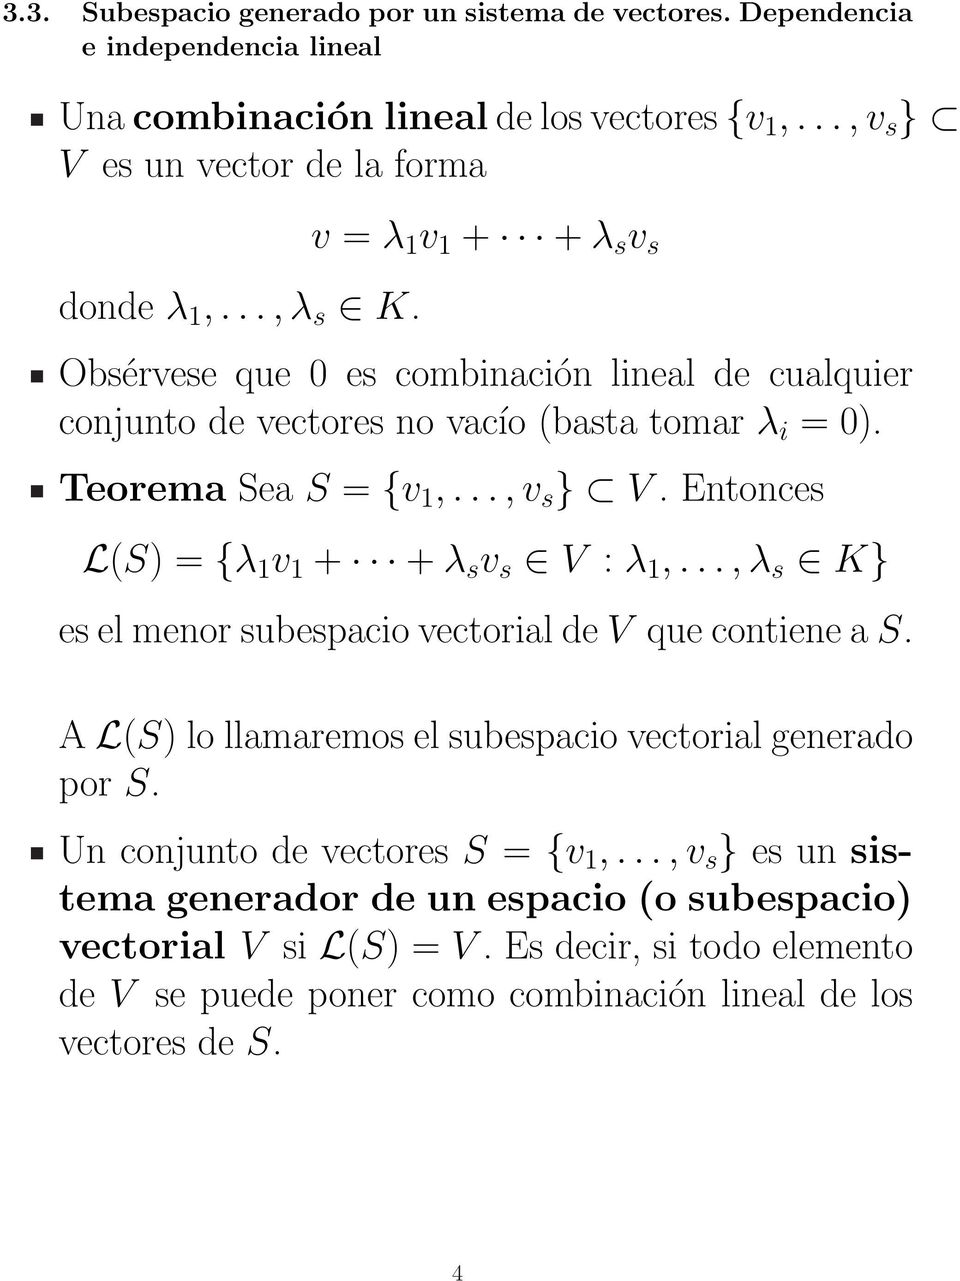 Entonces L(S) = {λ 1 v 1 + + λ s v s V : λ 1,..., λ s K} es el menor subespacio vectorial de V que contiene a S. A L(S) lo llamaremos el subespacio vectorial generado por S.